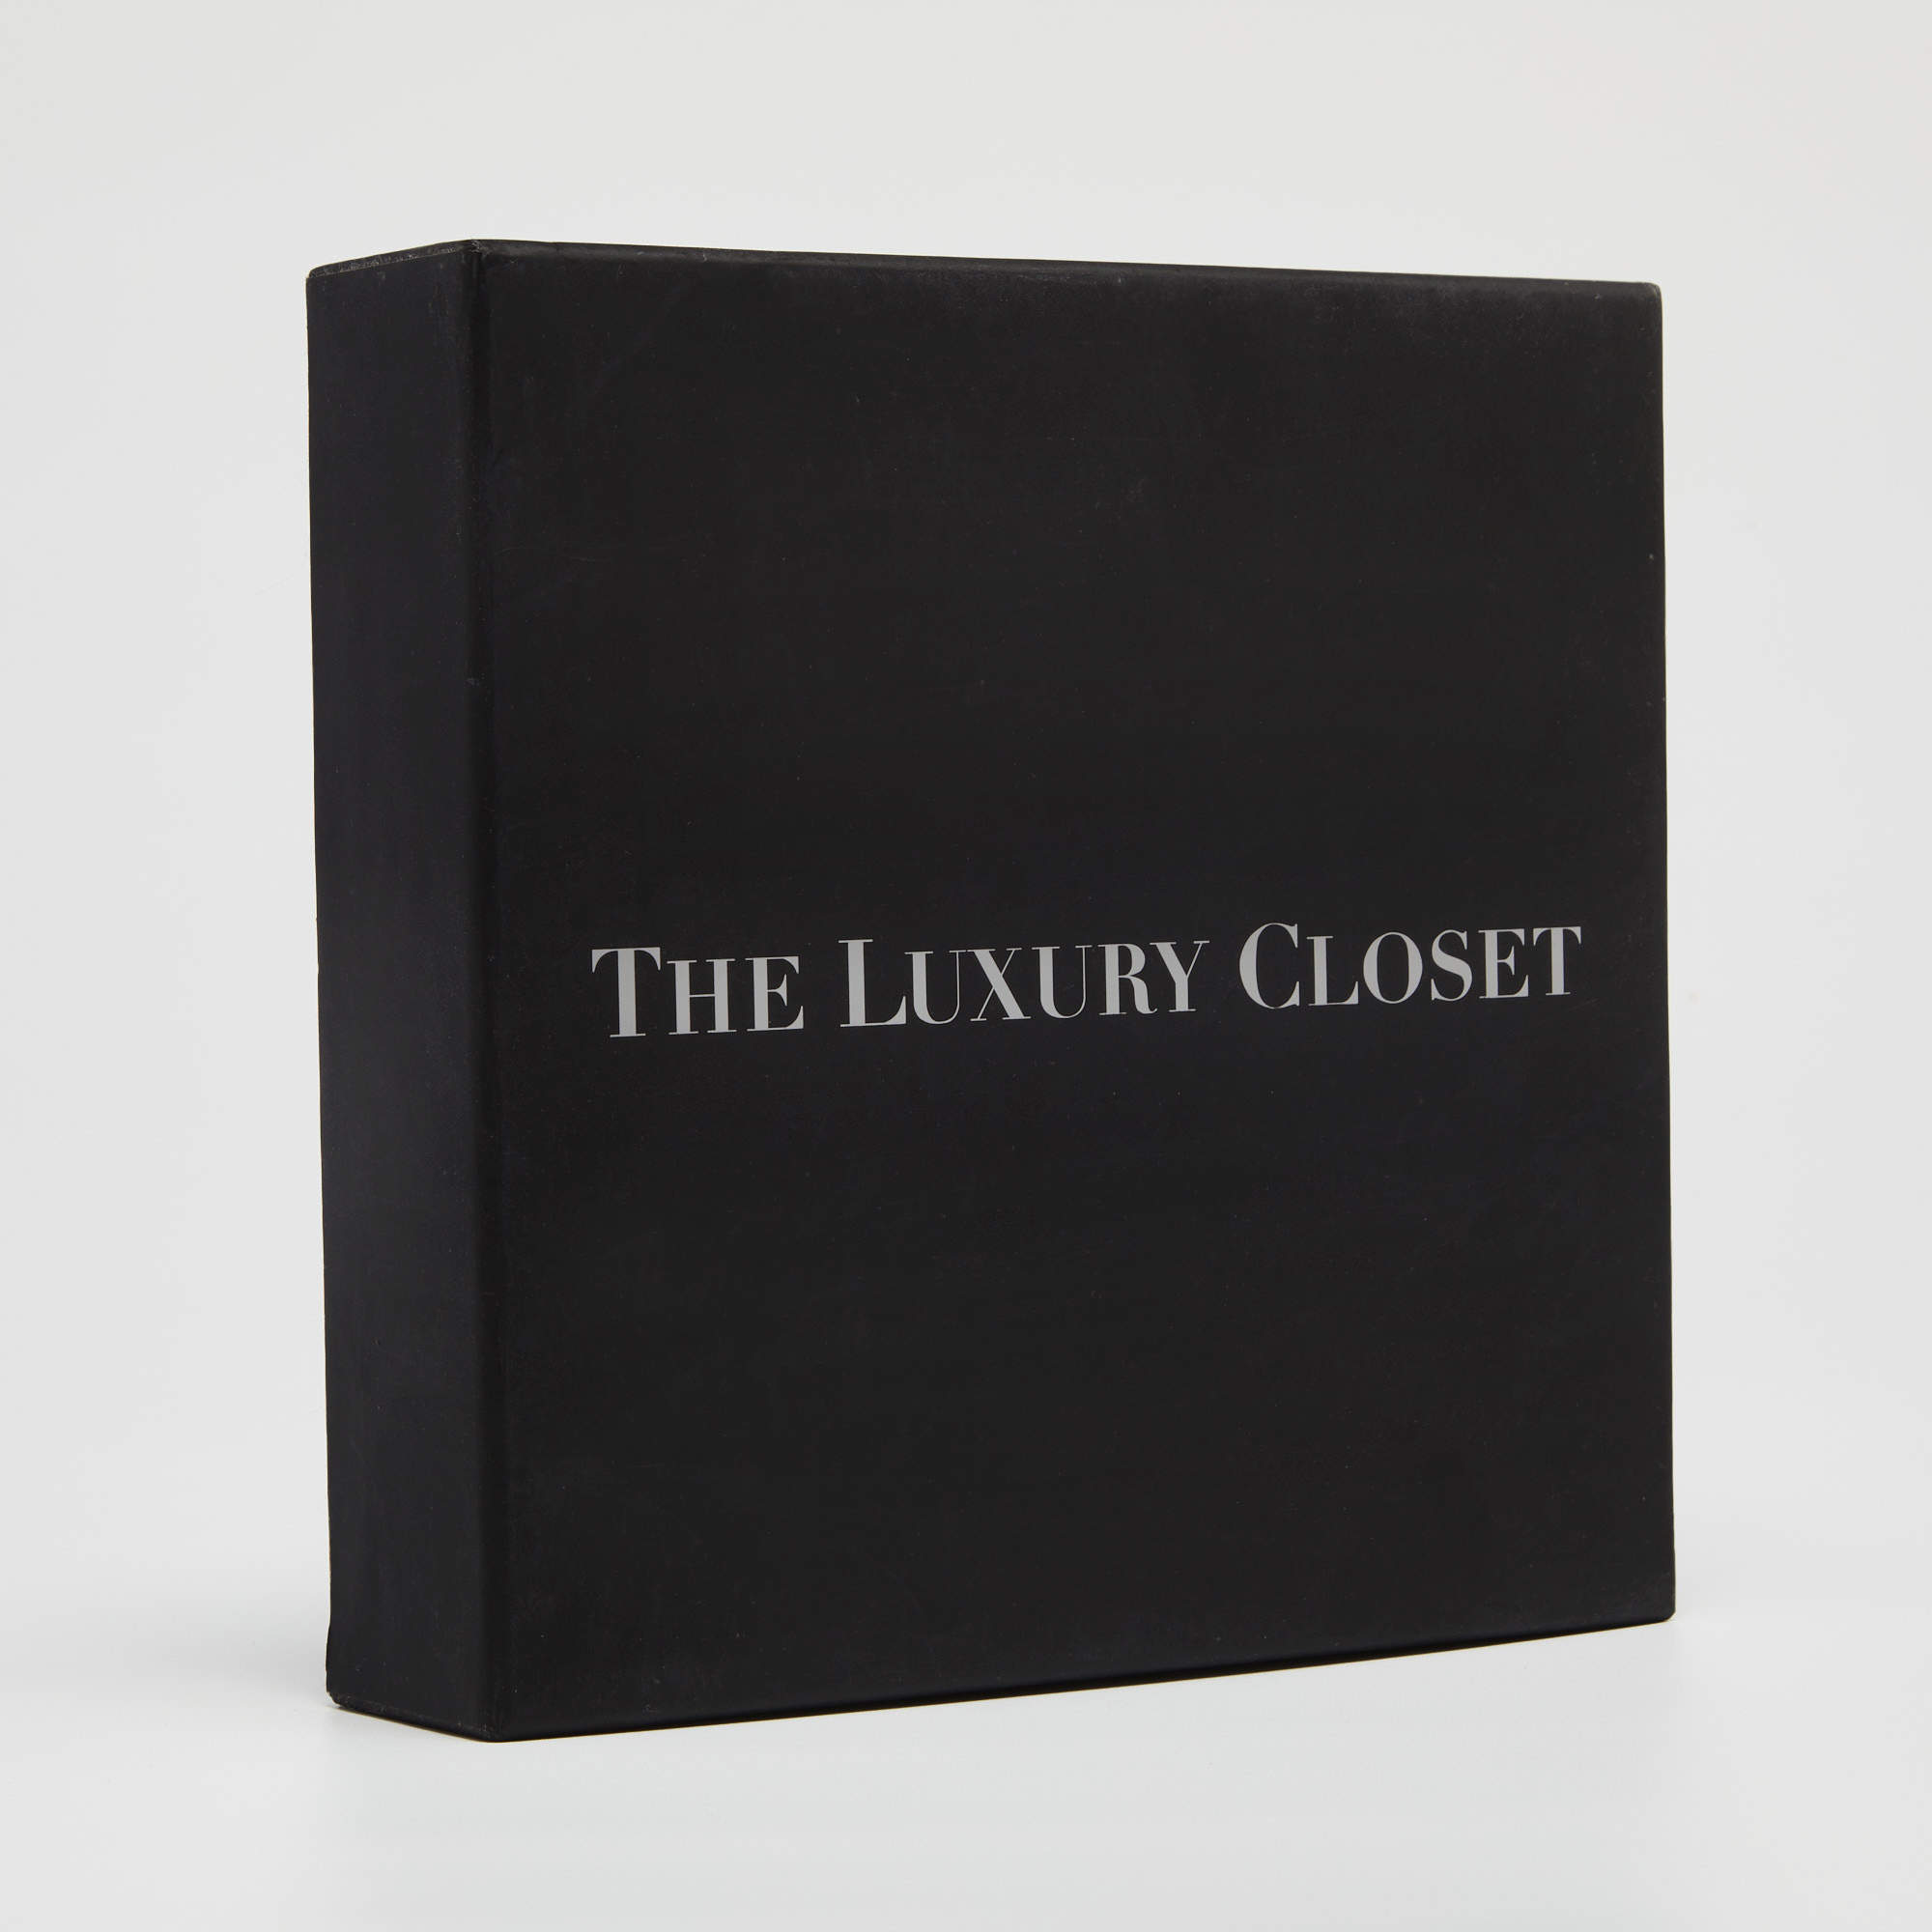 Louis Vuitton Navy Blue Leather Adjustable Shoulder Bag Strap Louis Vuitton  | The Luxury Closet